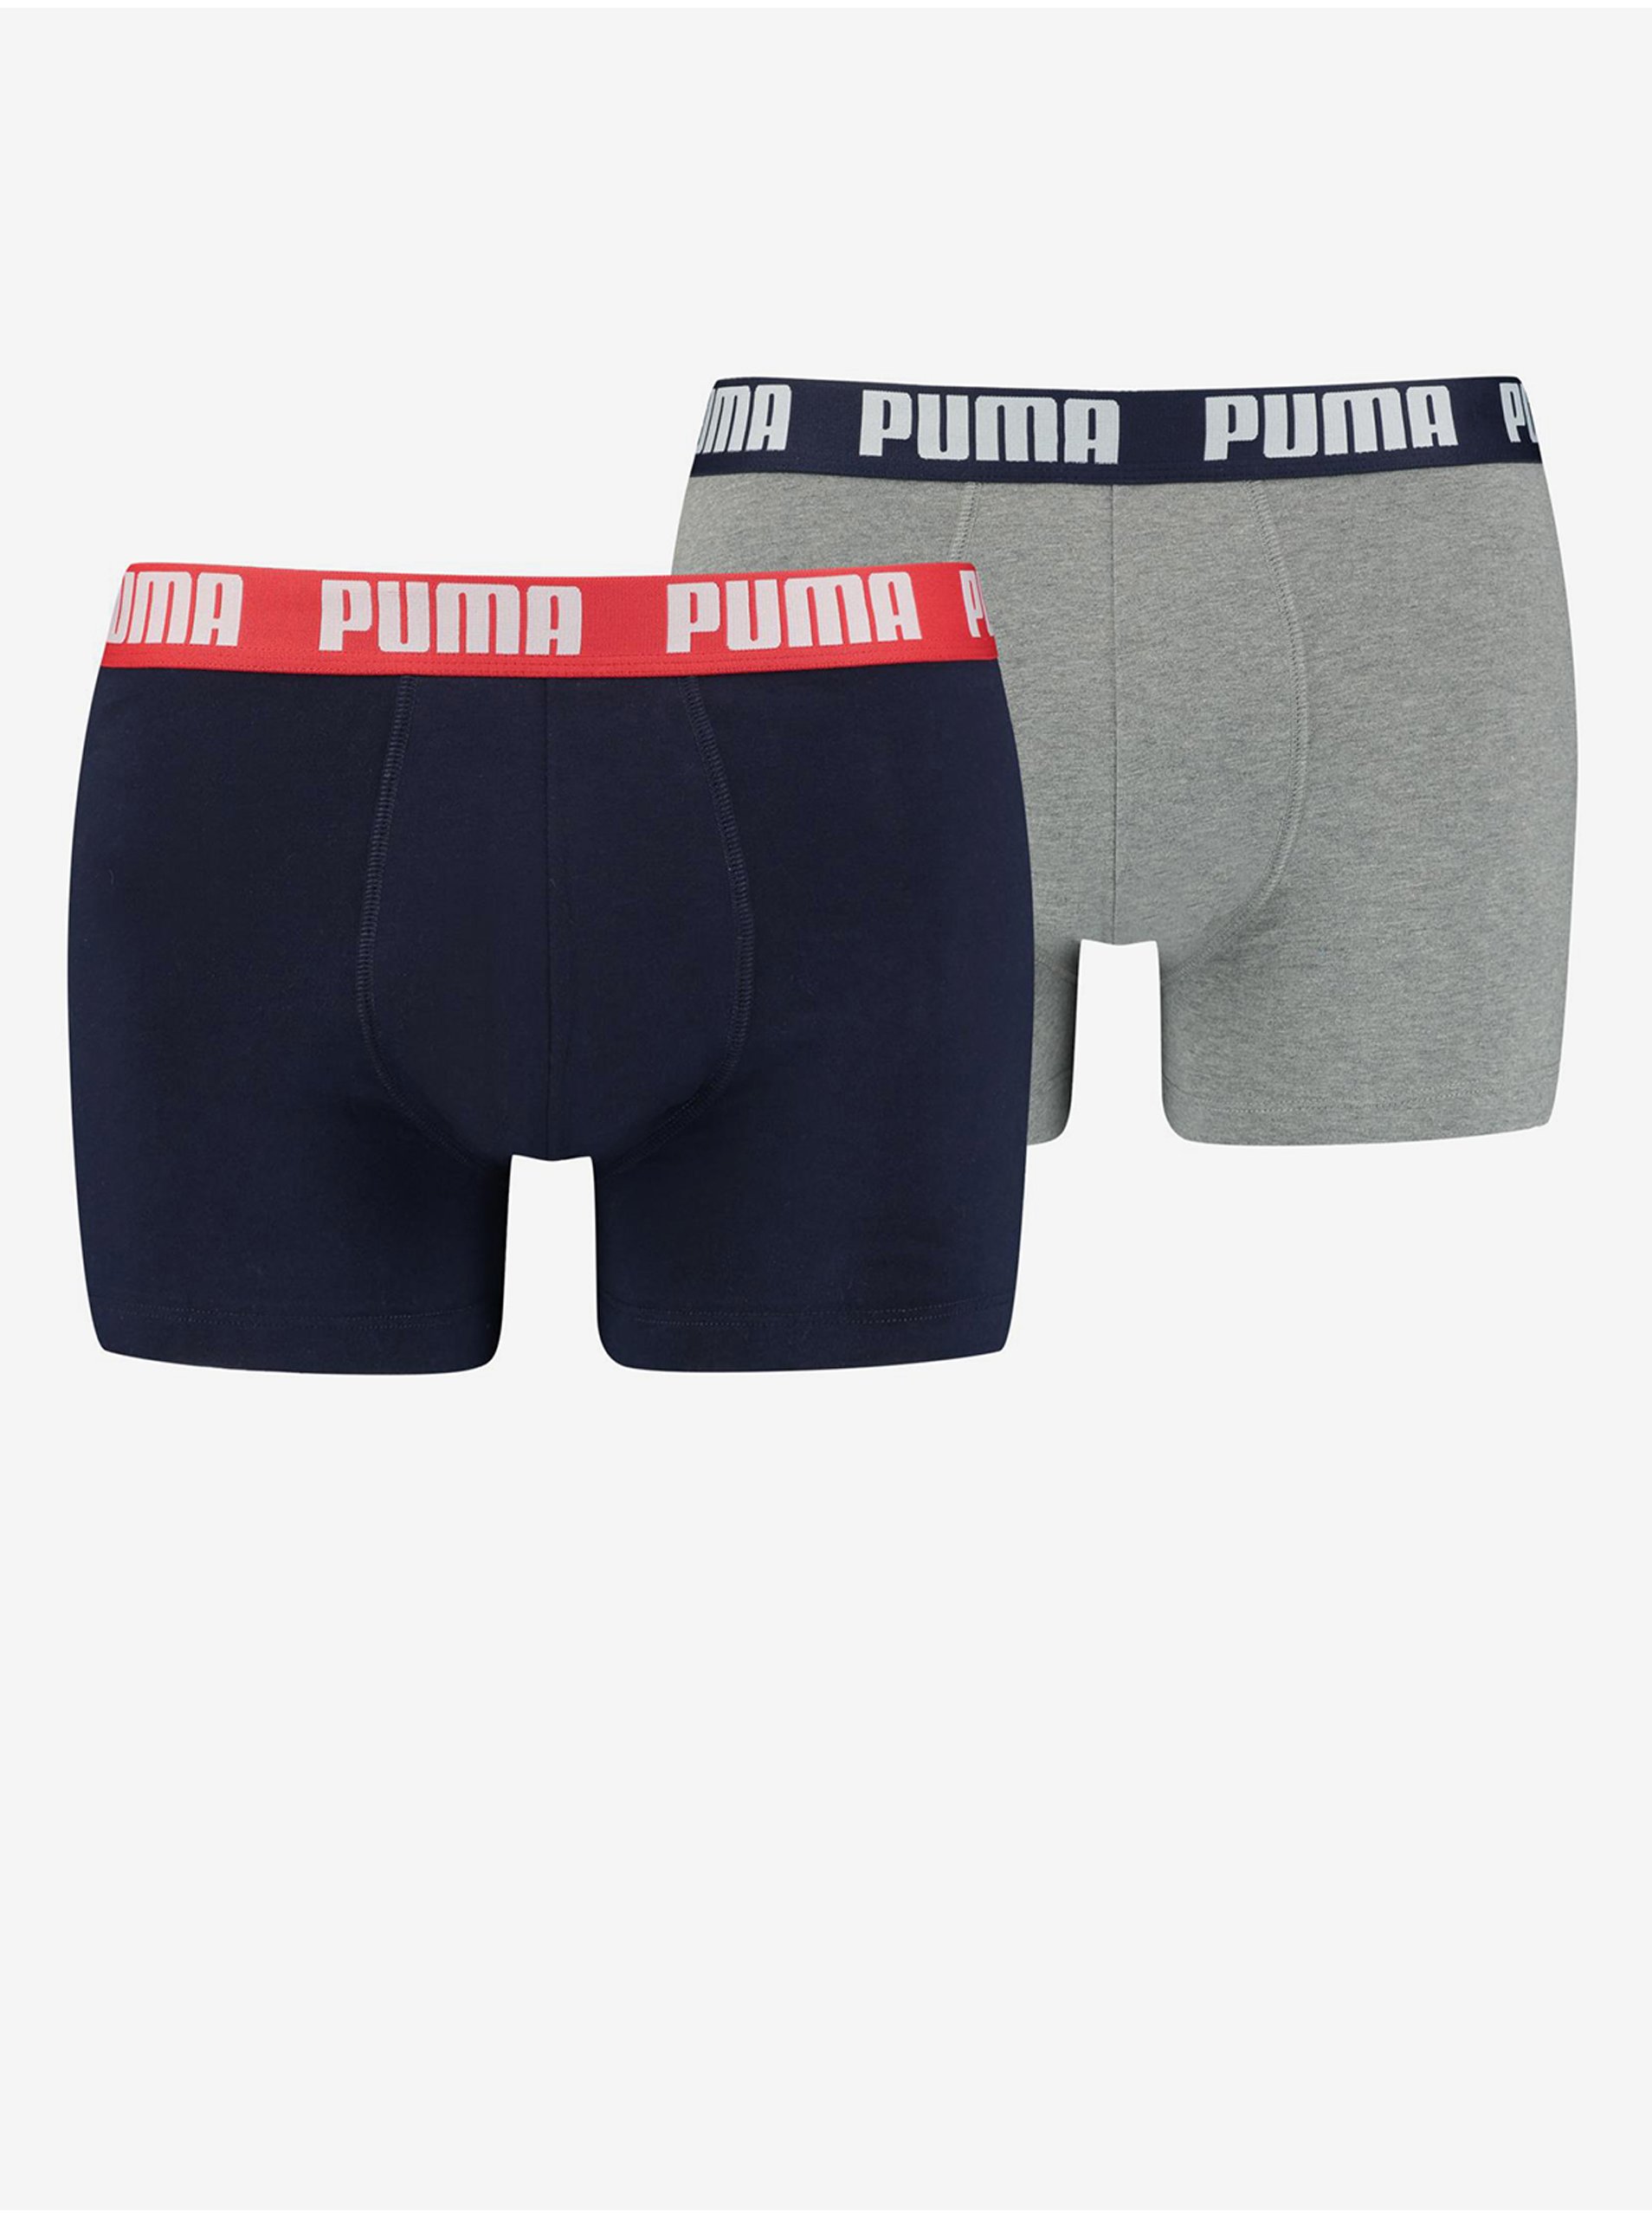 E-shop Sada dvoch pánskych boxerok v svetlošedej a tmavomodrej farbe Puma